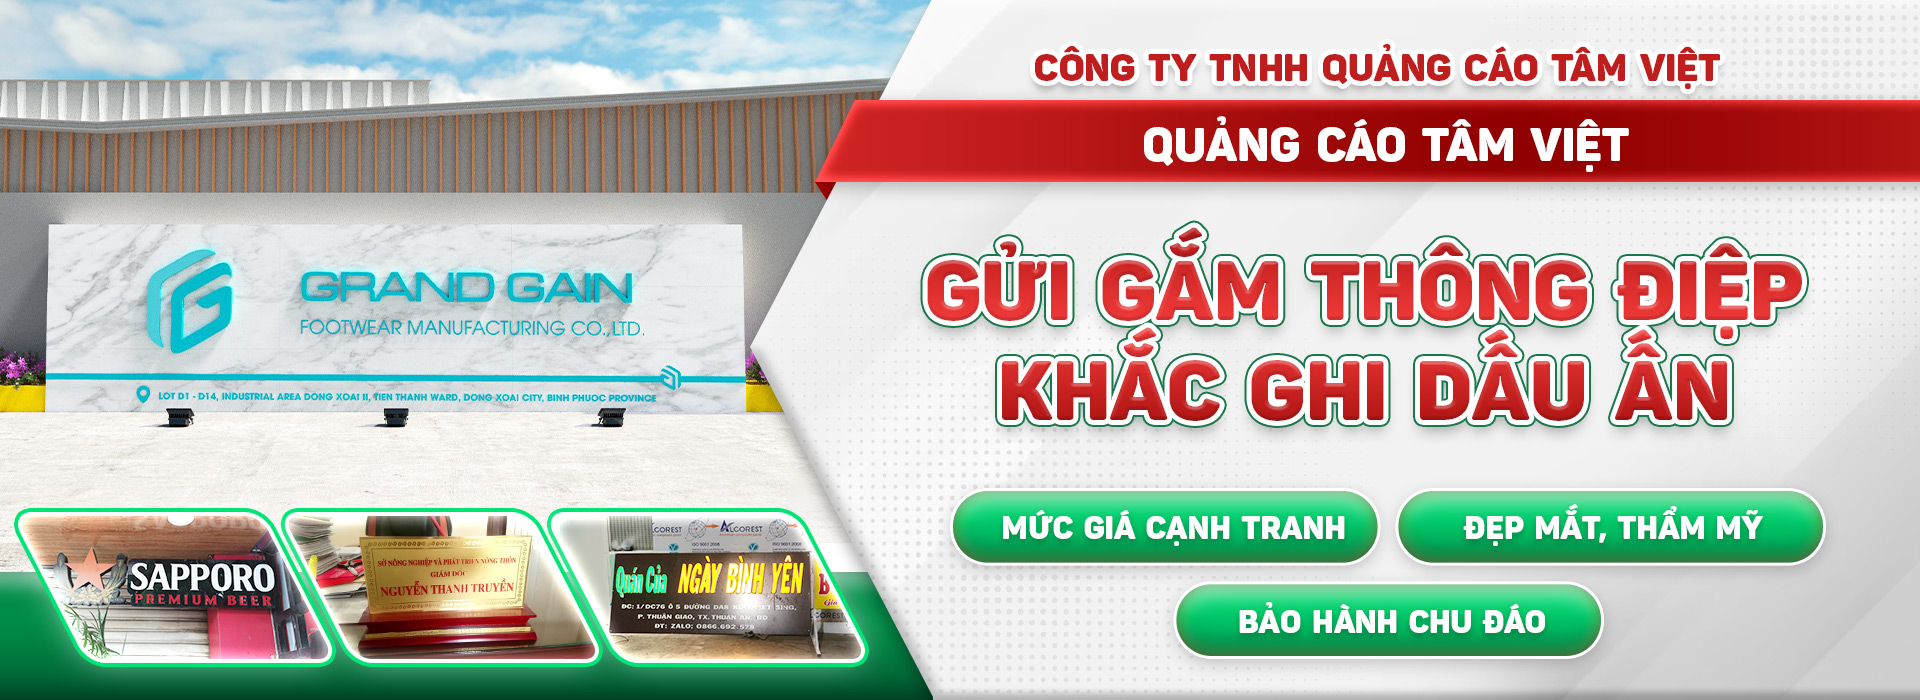 Công Ty TNHH Quảng Cáo Tâm Việt